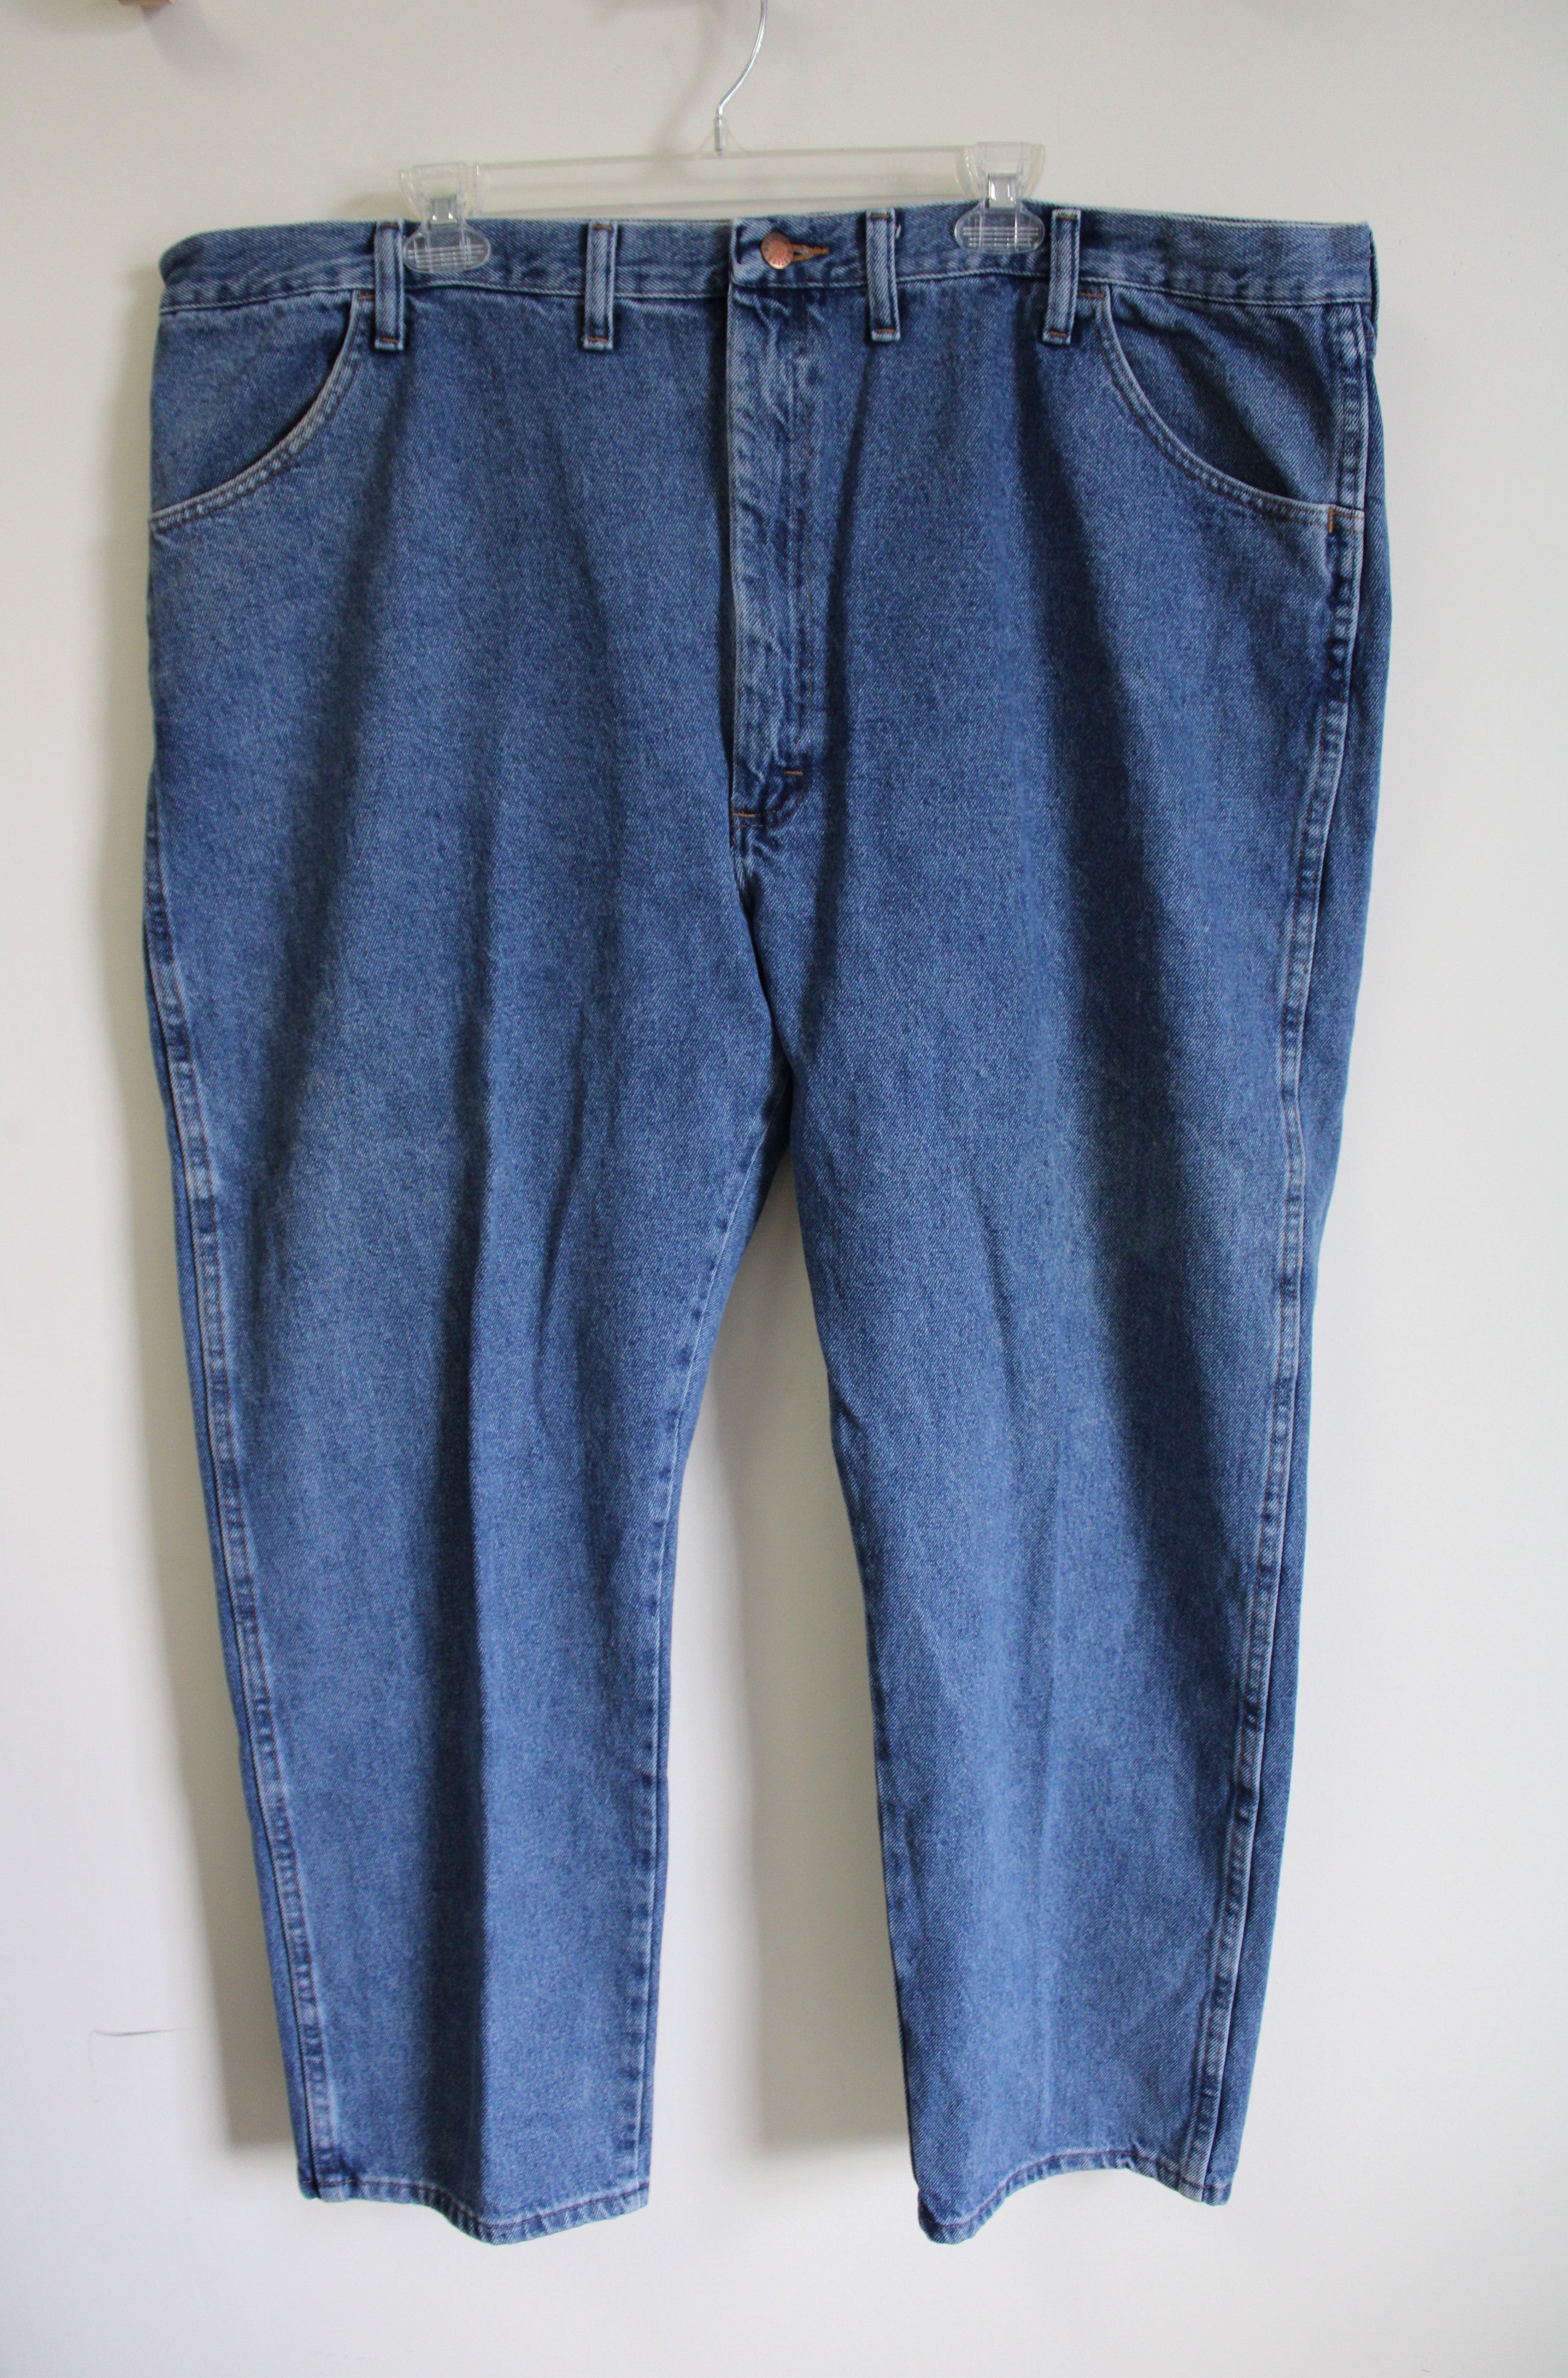 Louis Raphael Luxe Men’s Size 36X30 Grey/Blue Plaid Dress Pants